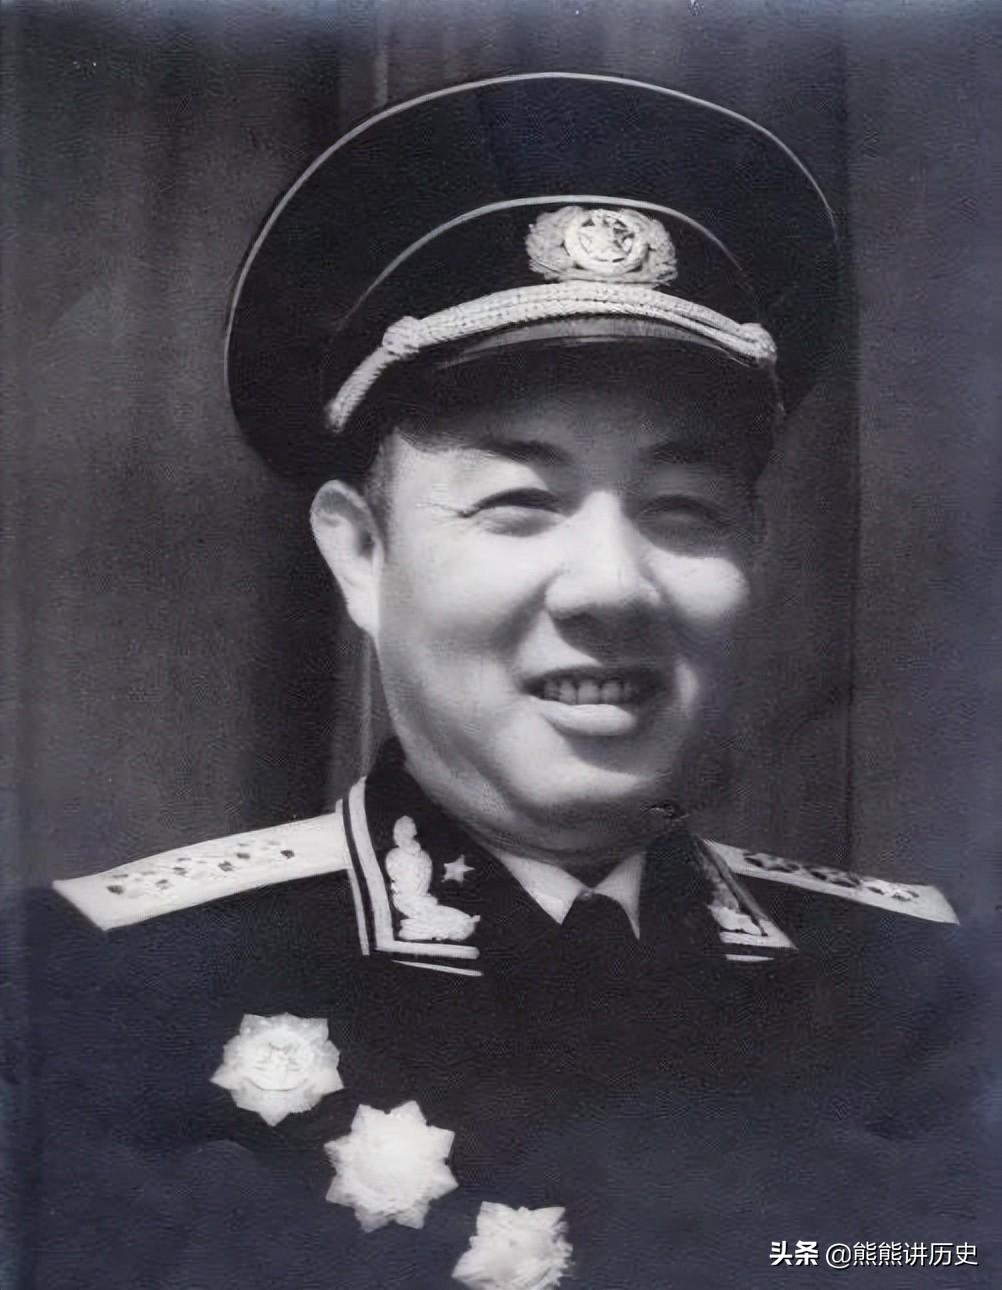 杨勇将军的两任搭档，都是优秀政工将领，他们担任的职位都不低